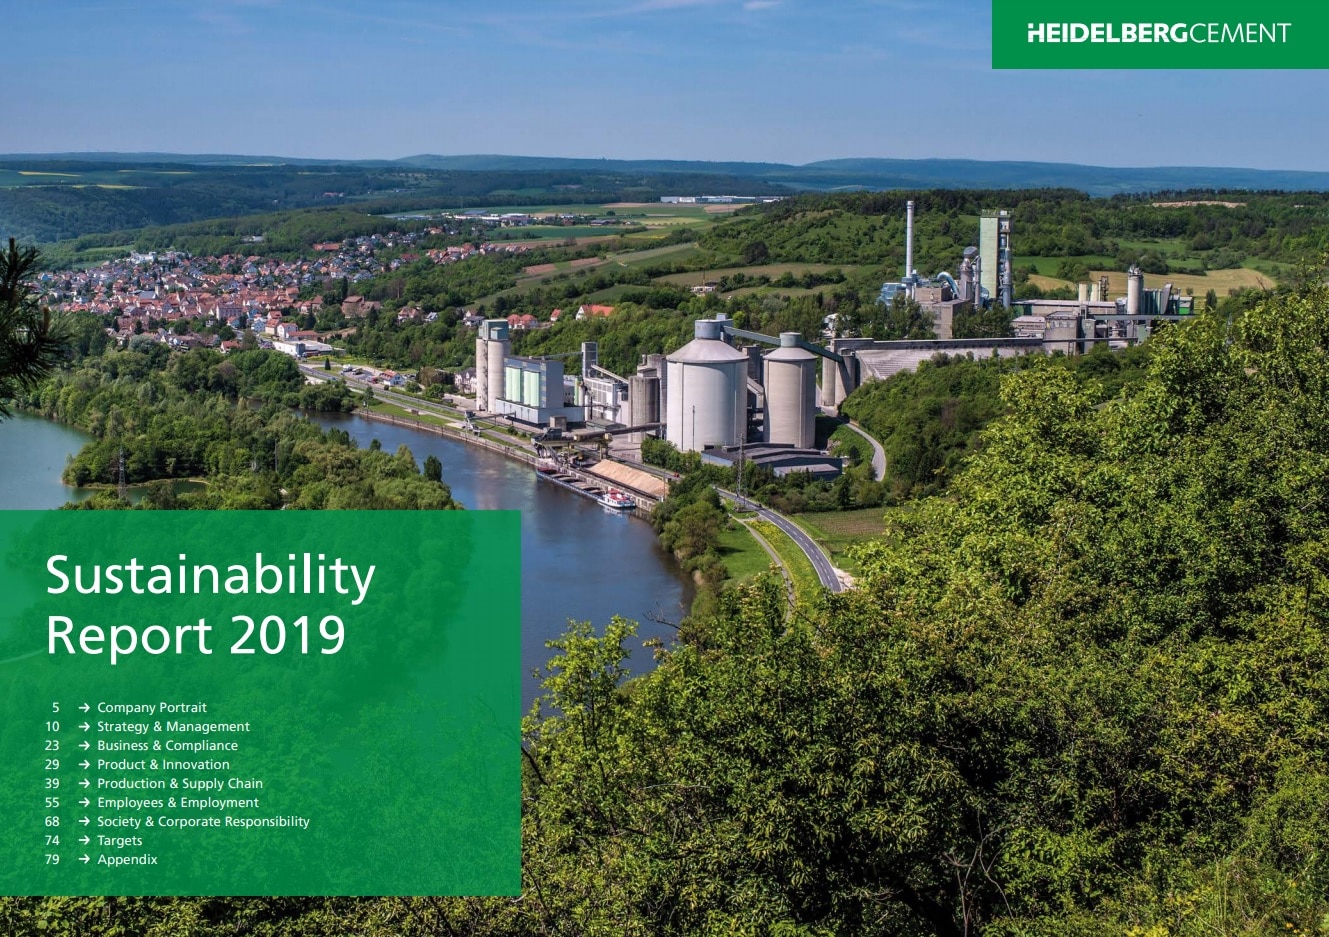 HeidelbergCement publica su Informe de Sostenibilidad 2019